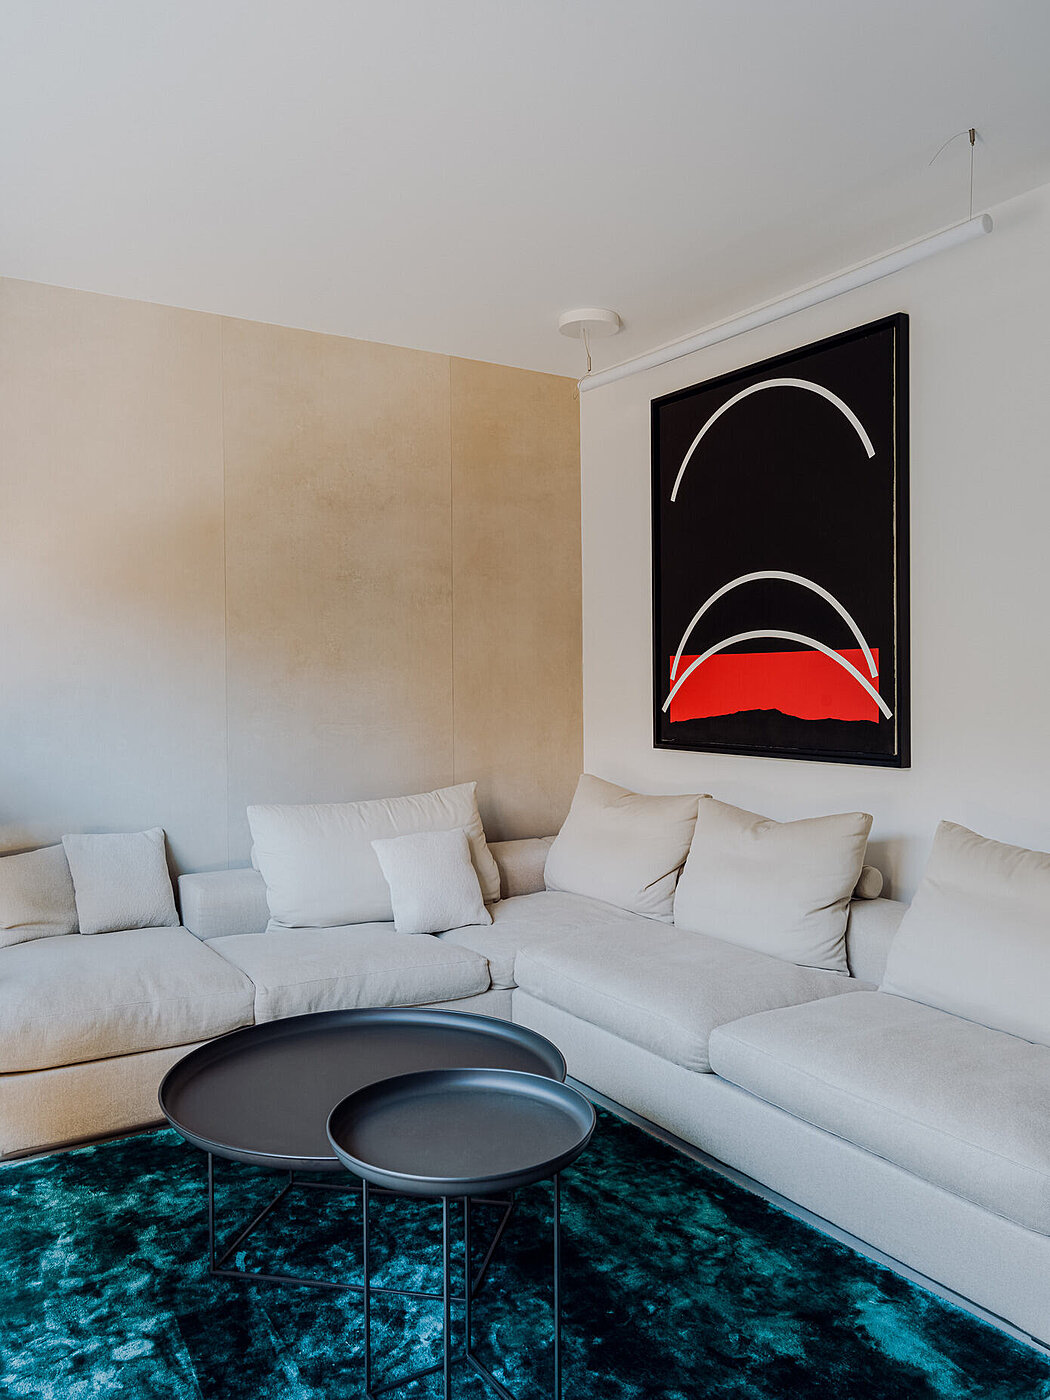 House with Art Poznań: Step Inside a Designer’s Dream - 1